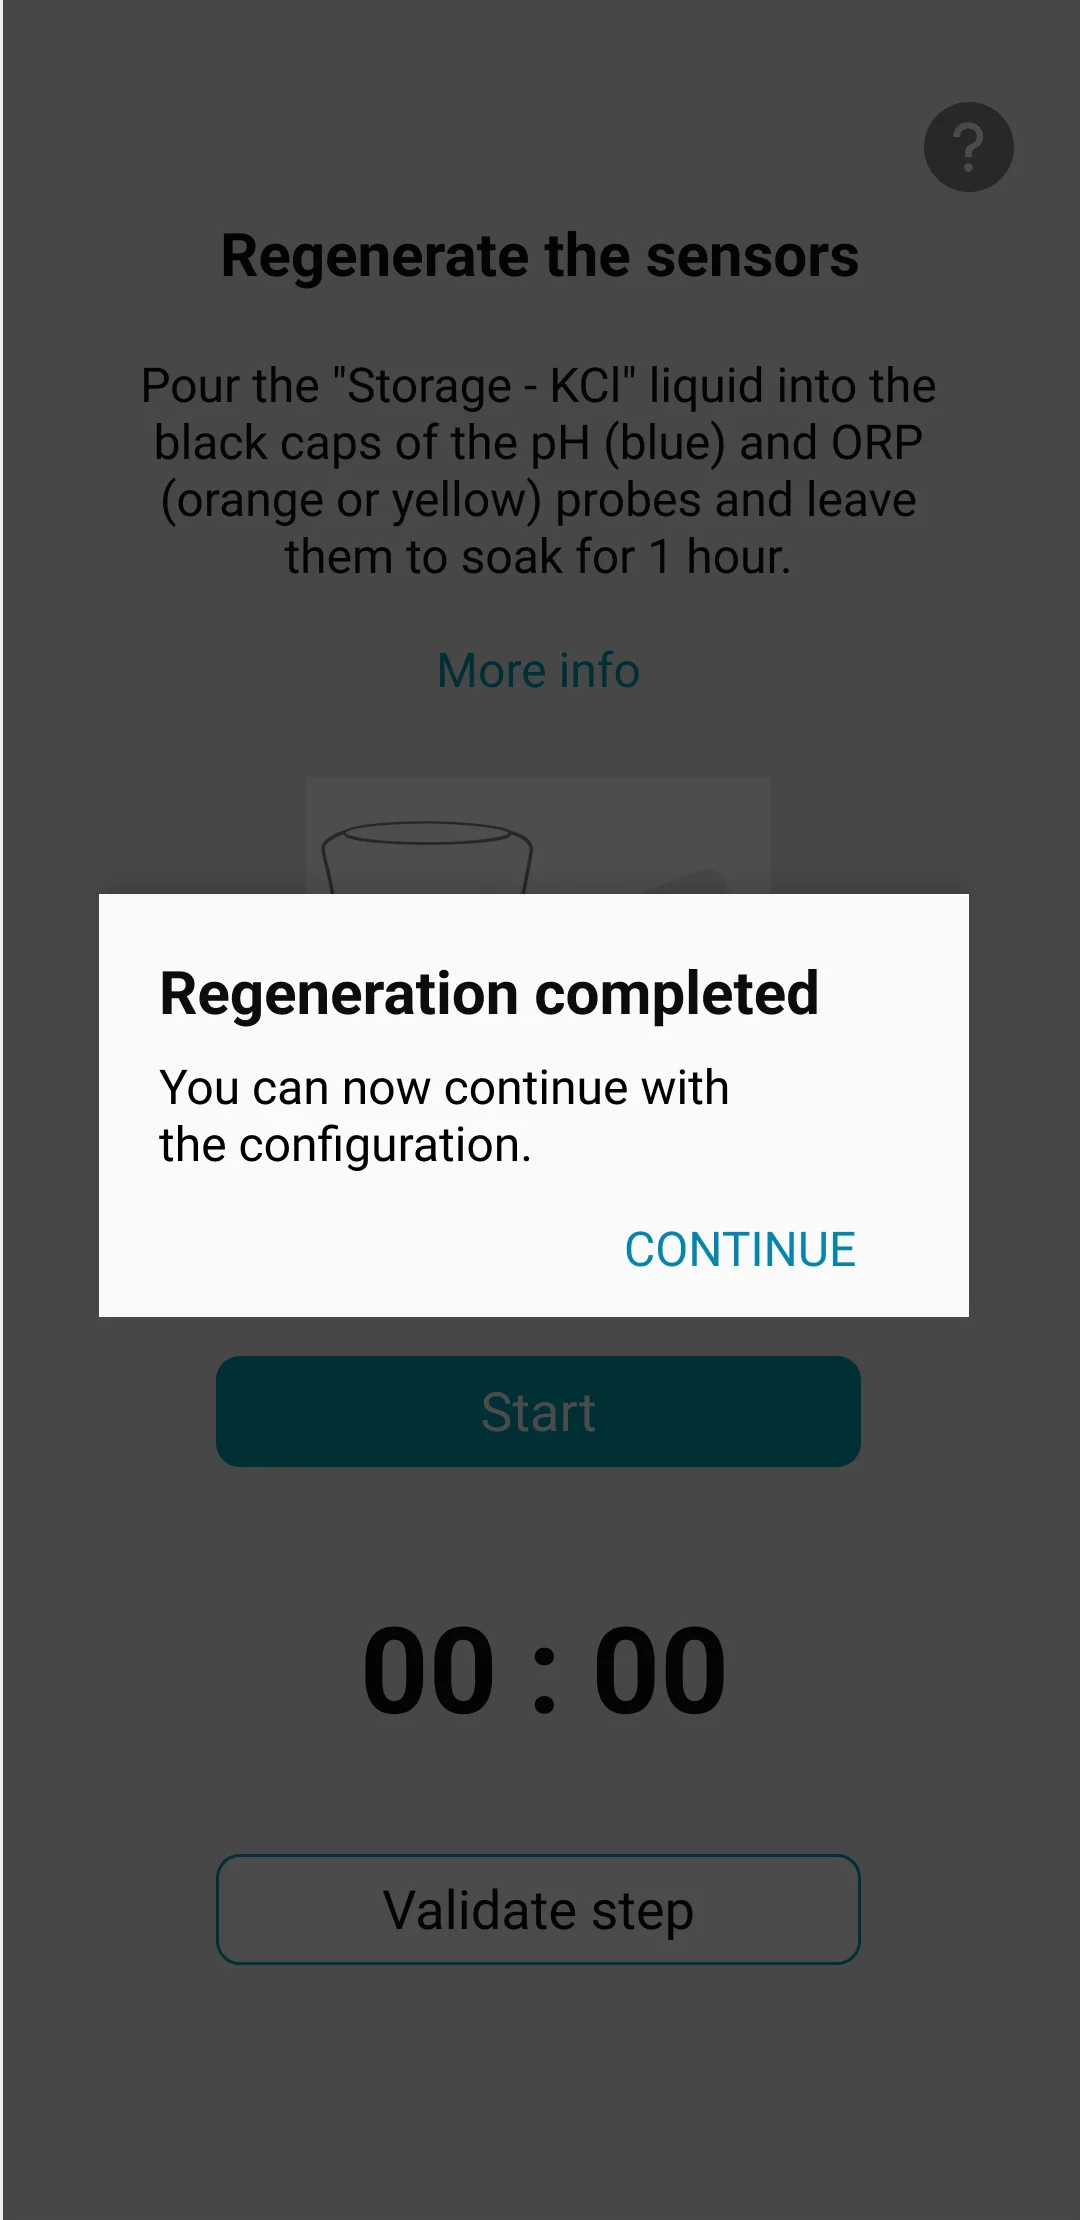 Visuel de l'application ICO qui montre le message "régénération terminée" ainsi qu'une explication